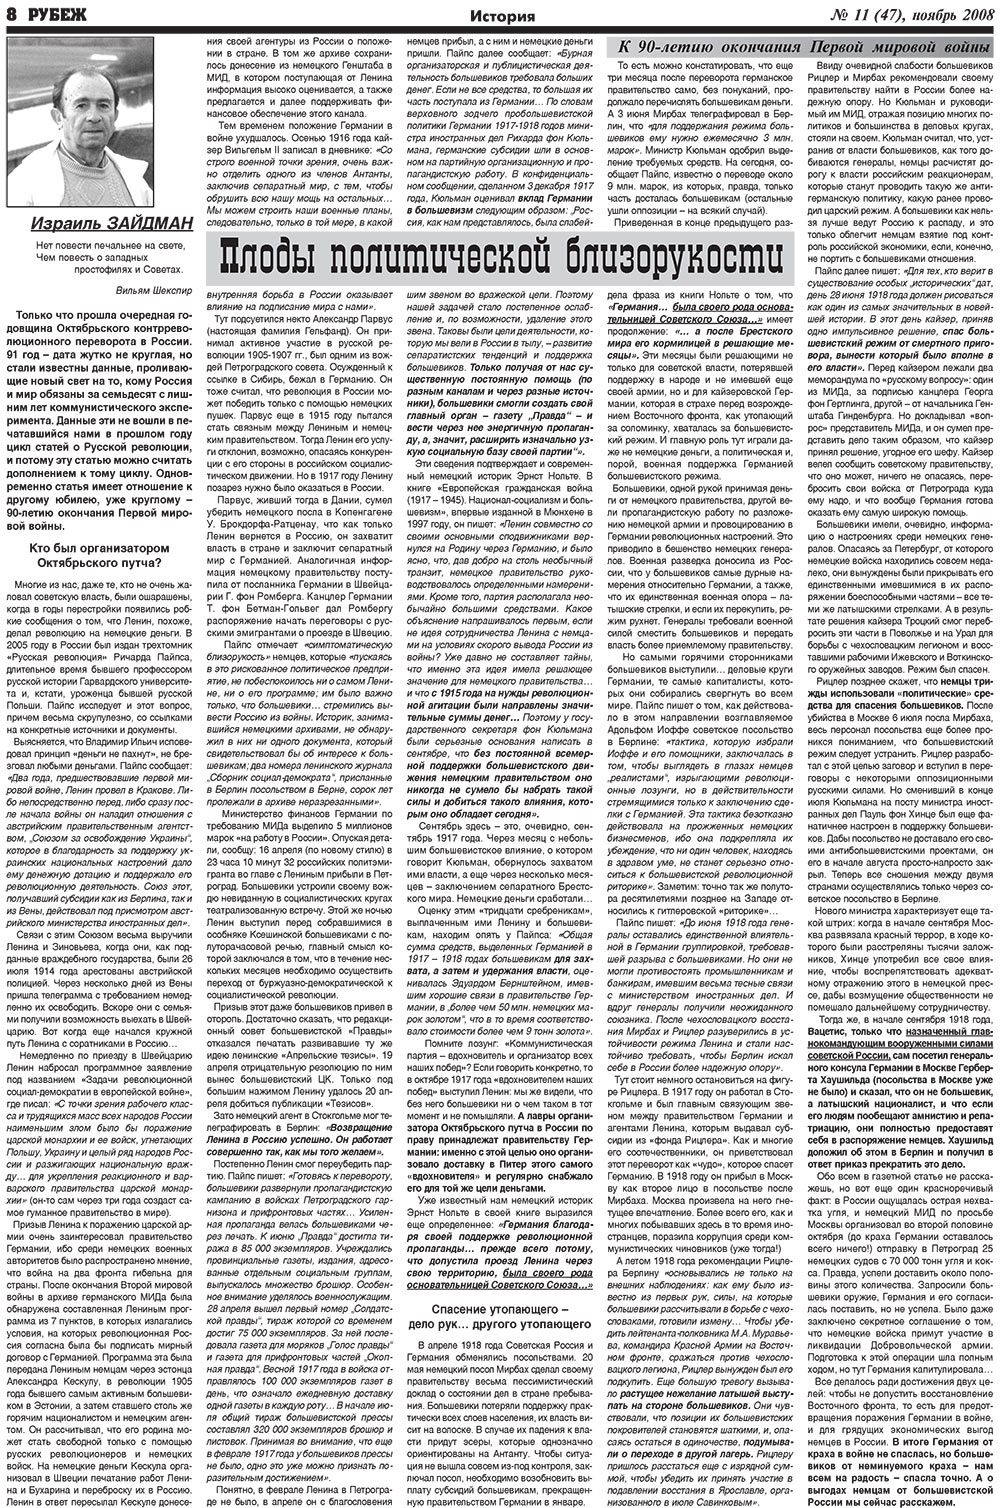 Рубеж (газета). 2008 год, номер 11, стр. 8